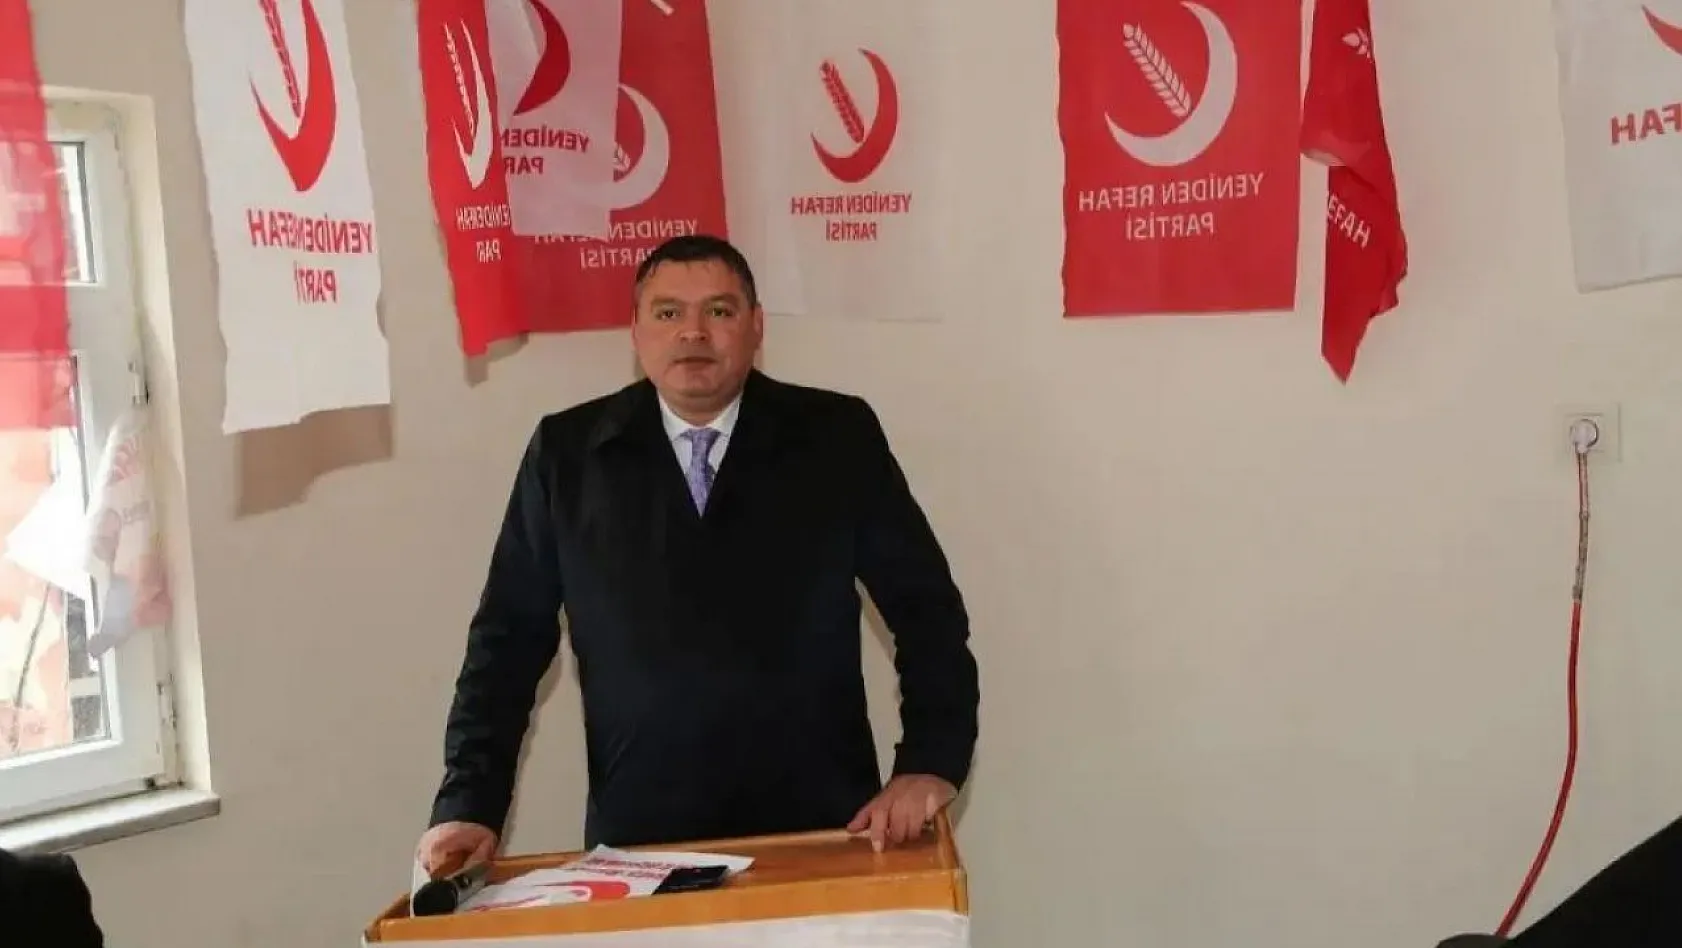 Yeniden Refah adayı Narin: 'Daha önce AK Parti'ye, MHP'ye oy veriyorduk' diyen vatandaşlar, artık…